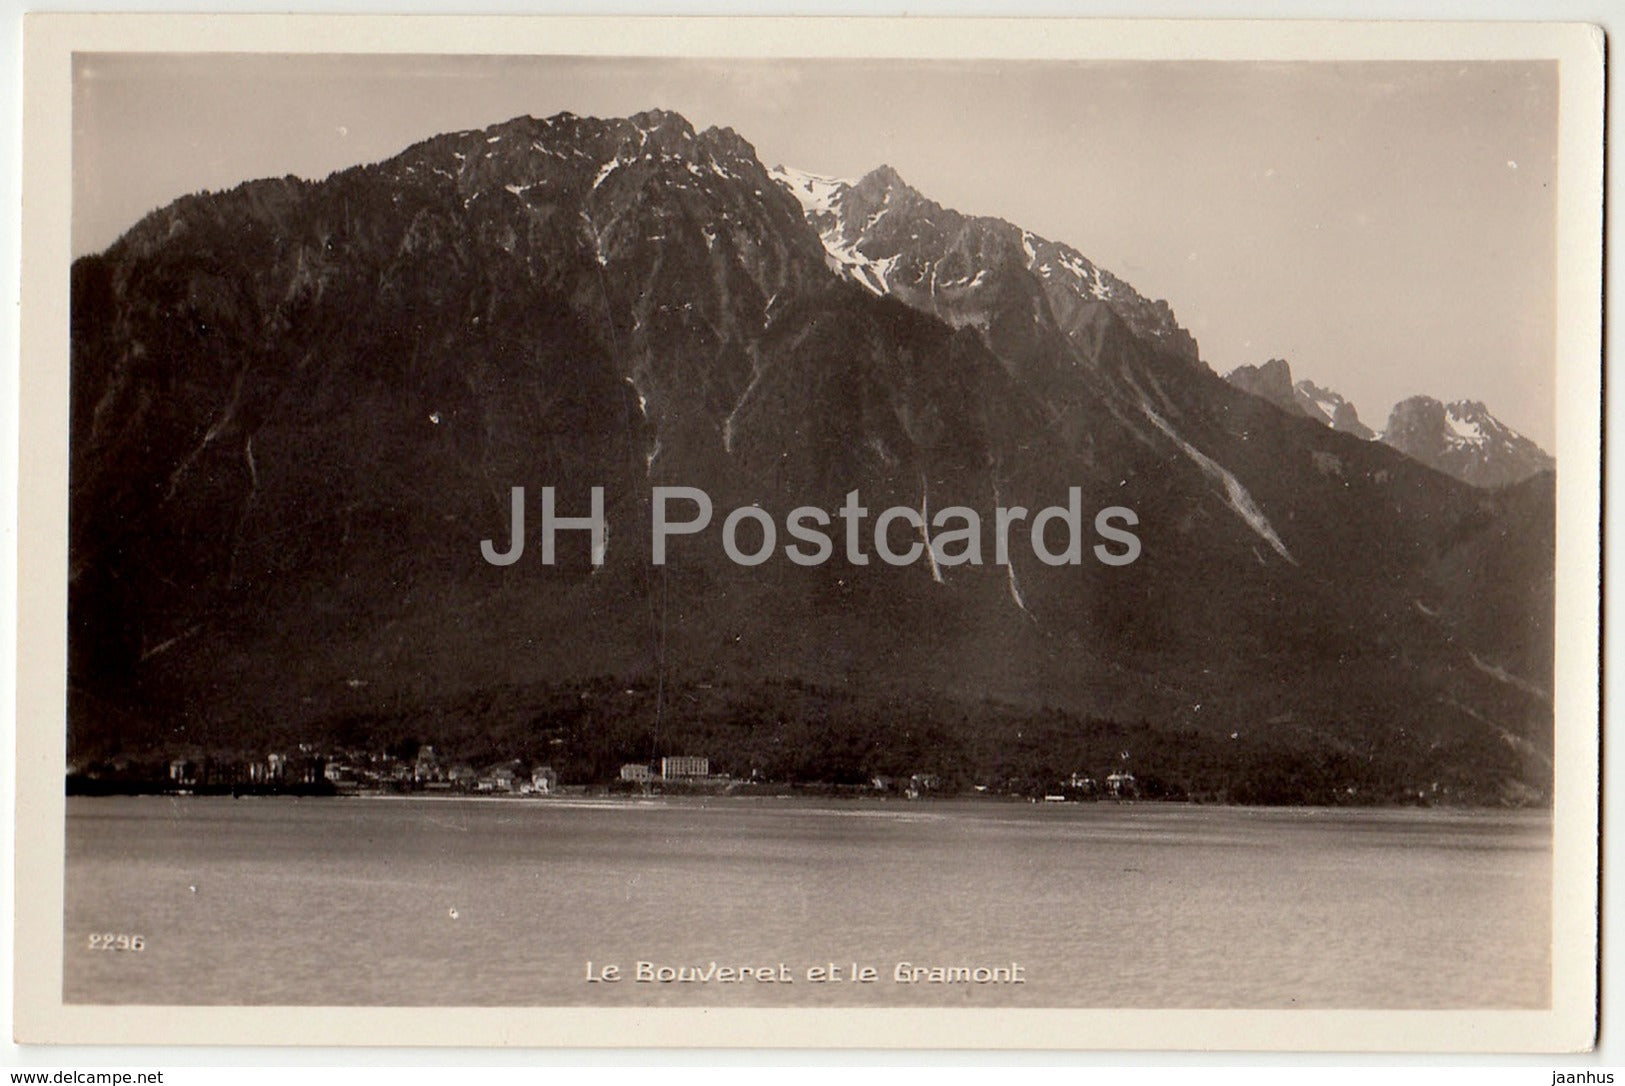 Le Bouveret et le Gramont - 2296 - Switzerland - old postcard - unused - JH Postcards